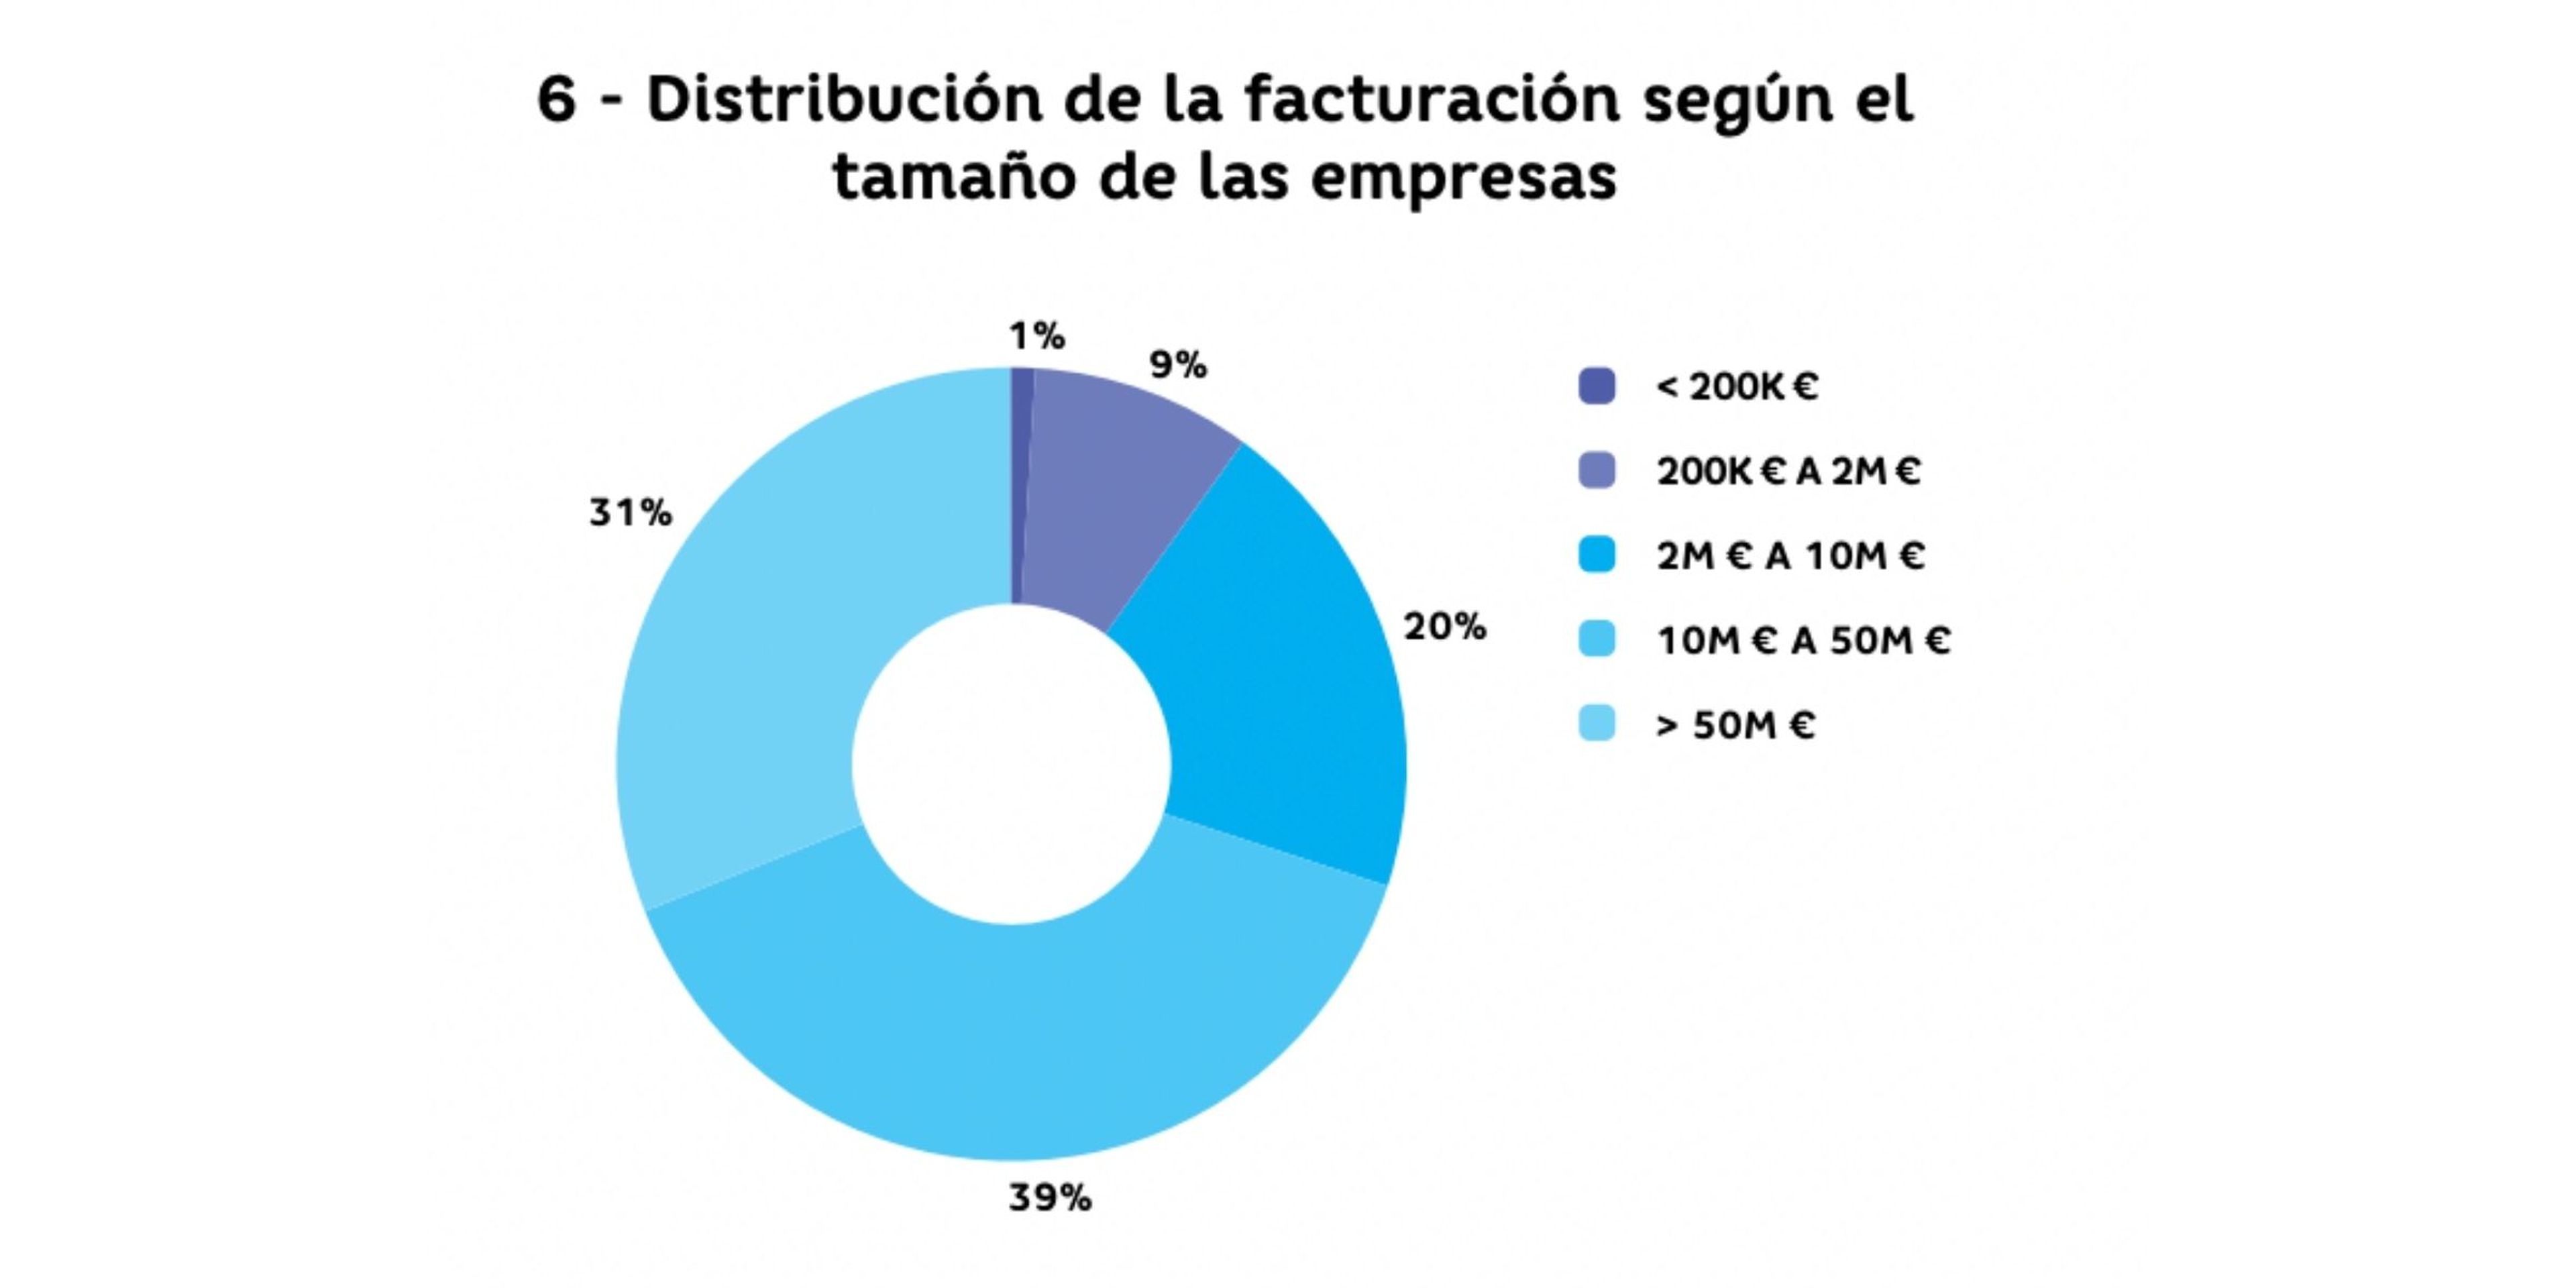 Distribución de la facturación en función del tamaño de las empresas